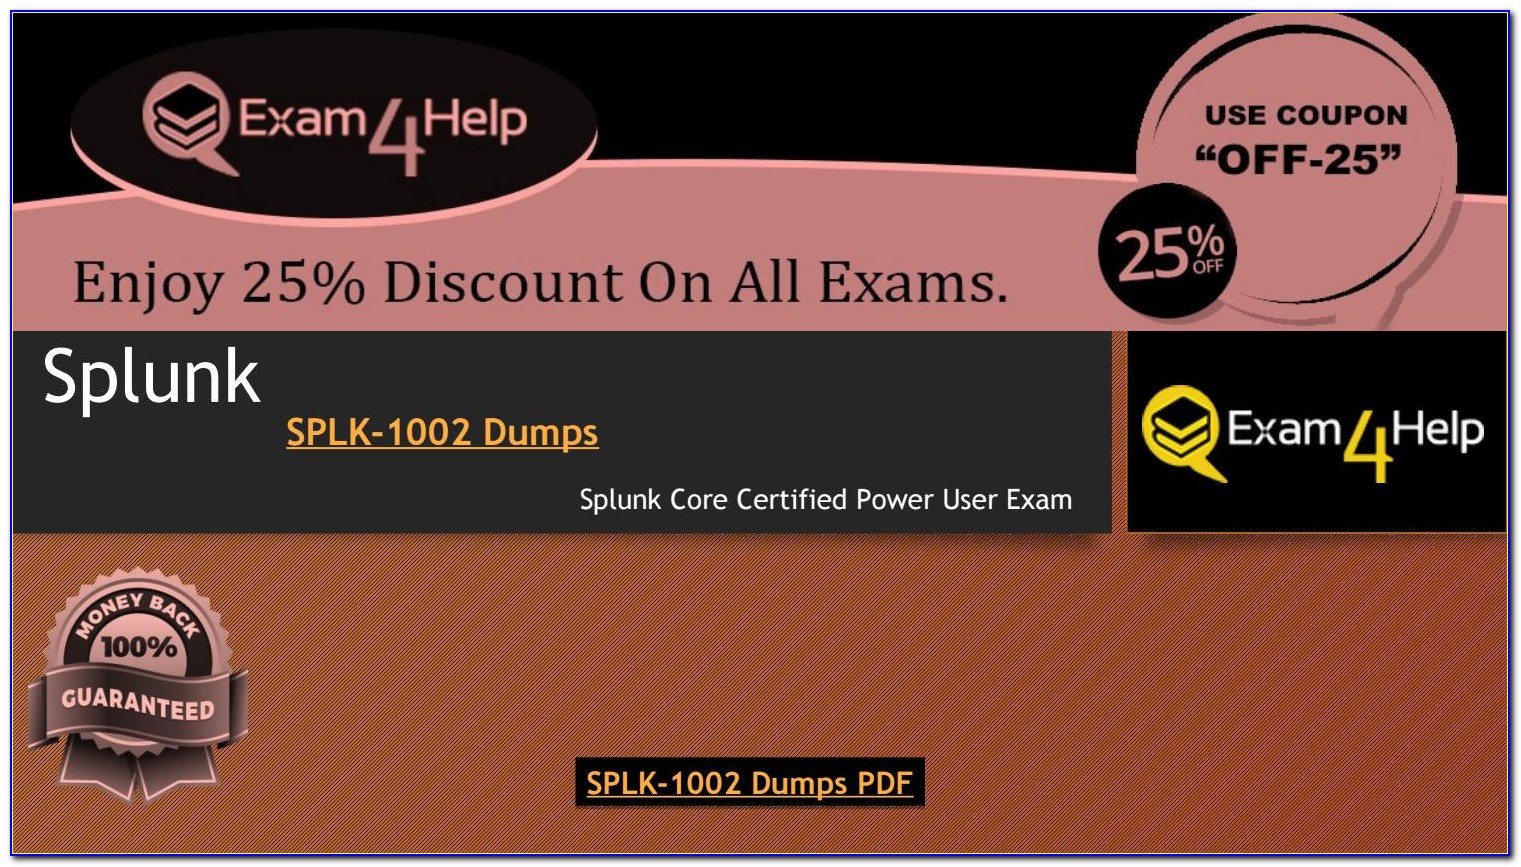 Splunk Exam Dumps